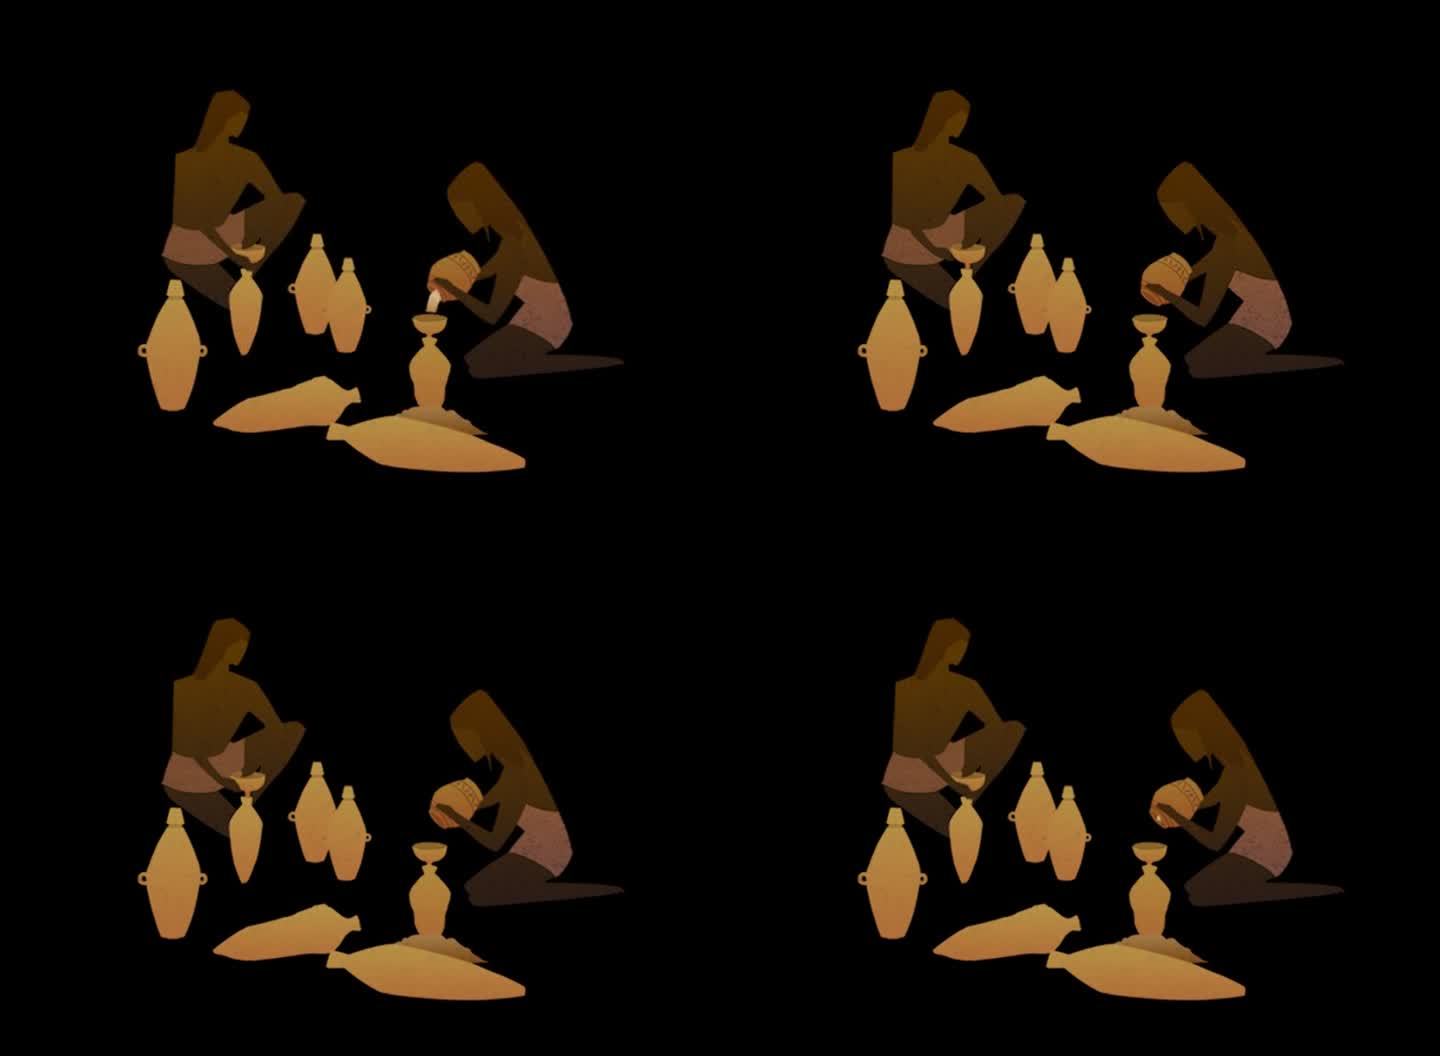 原始人生活场景二维动画——陶器酿酒